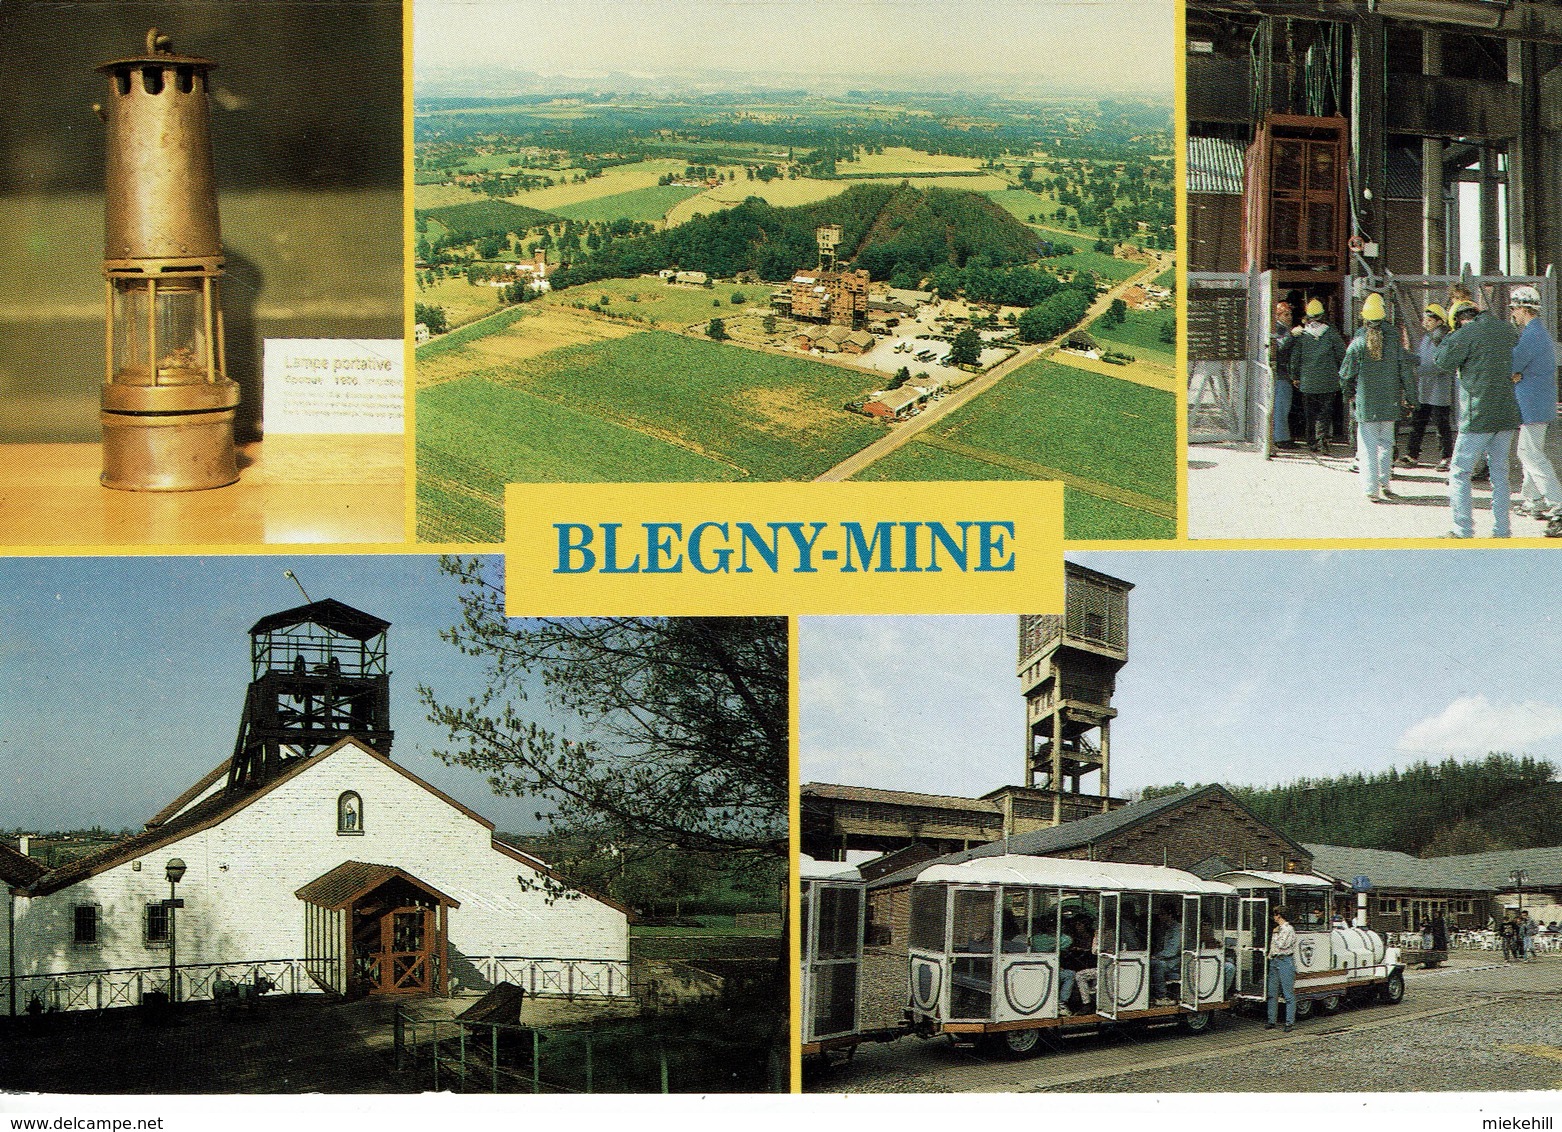 BLEGNY-MINE-CHARBONNAGE- LAMPE DE MINEUR-CHARBON-PATRIMOINE MONDIAL DE L'UNESCO - Blégny